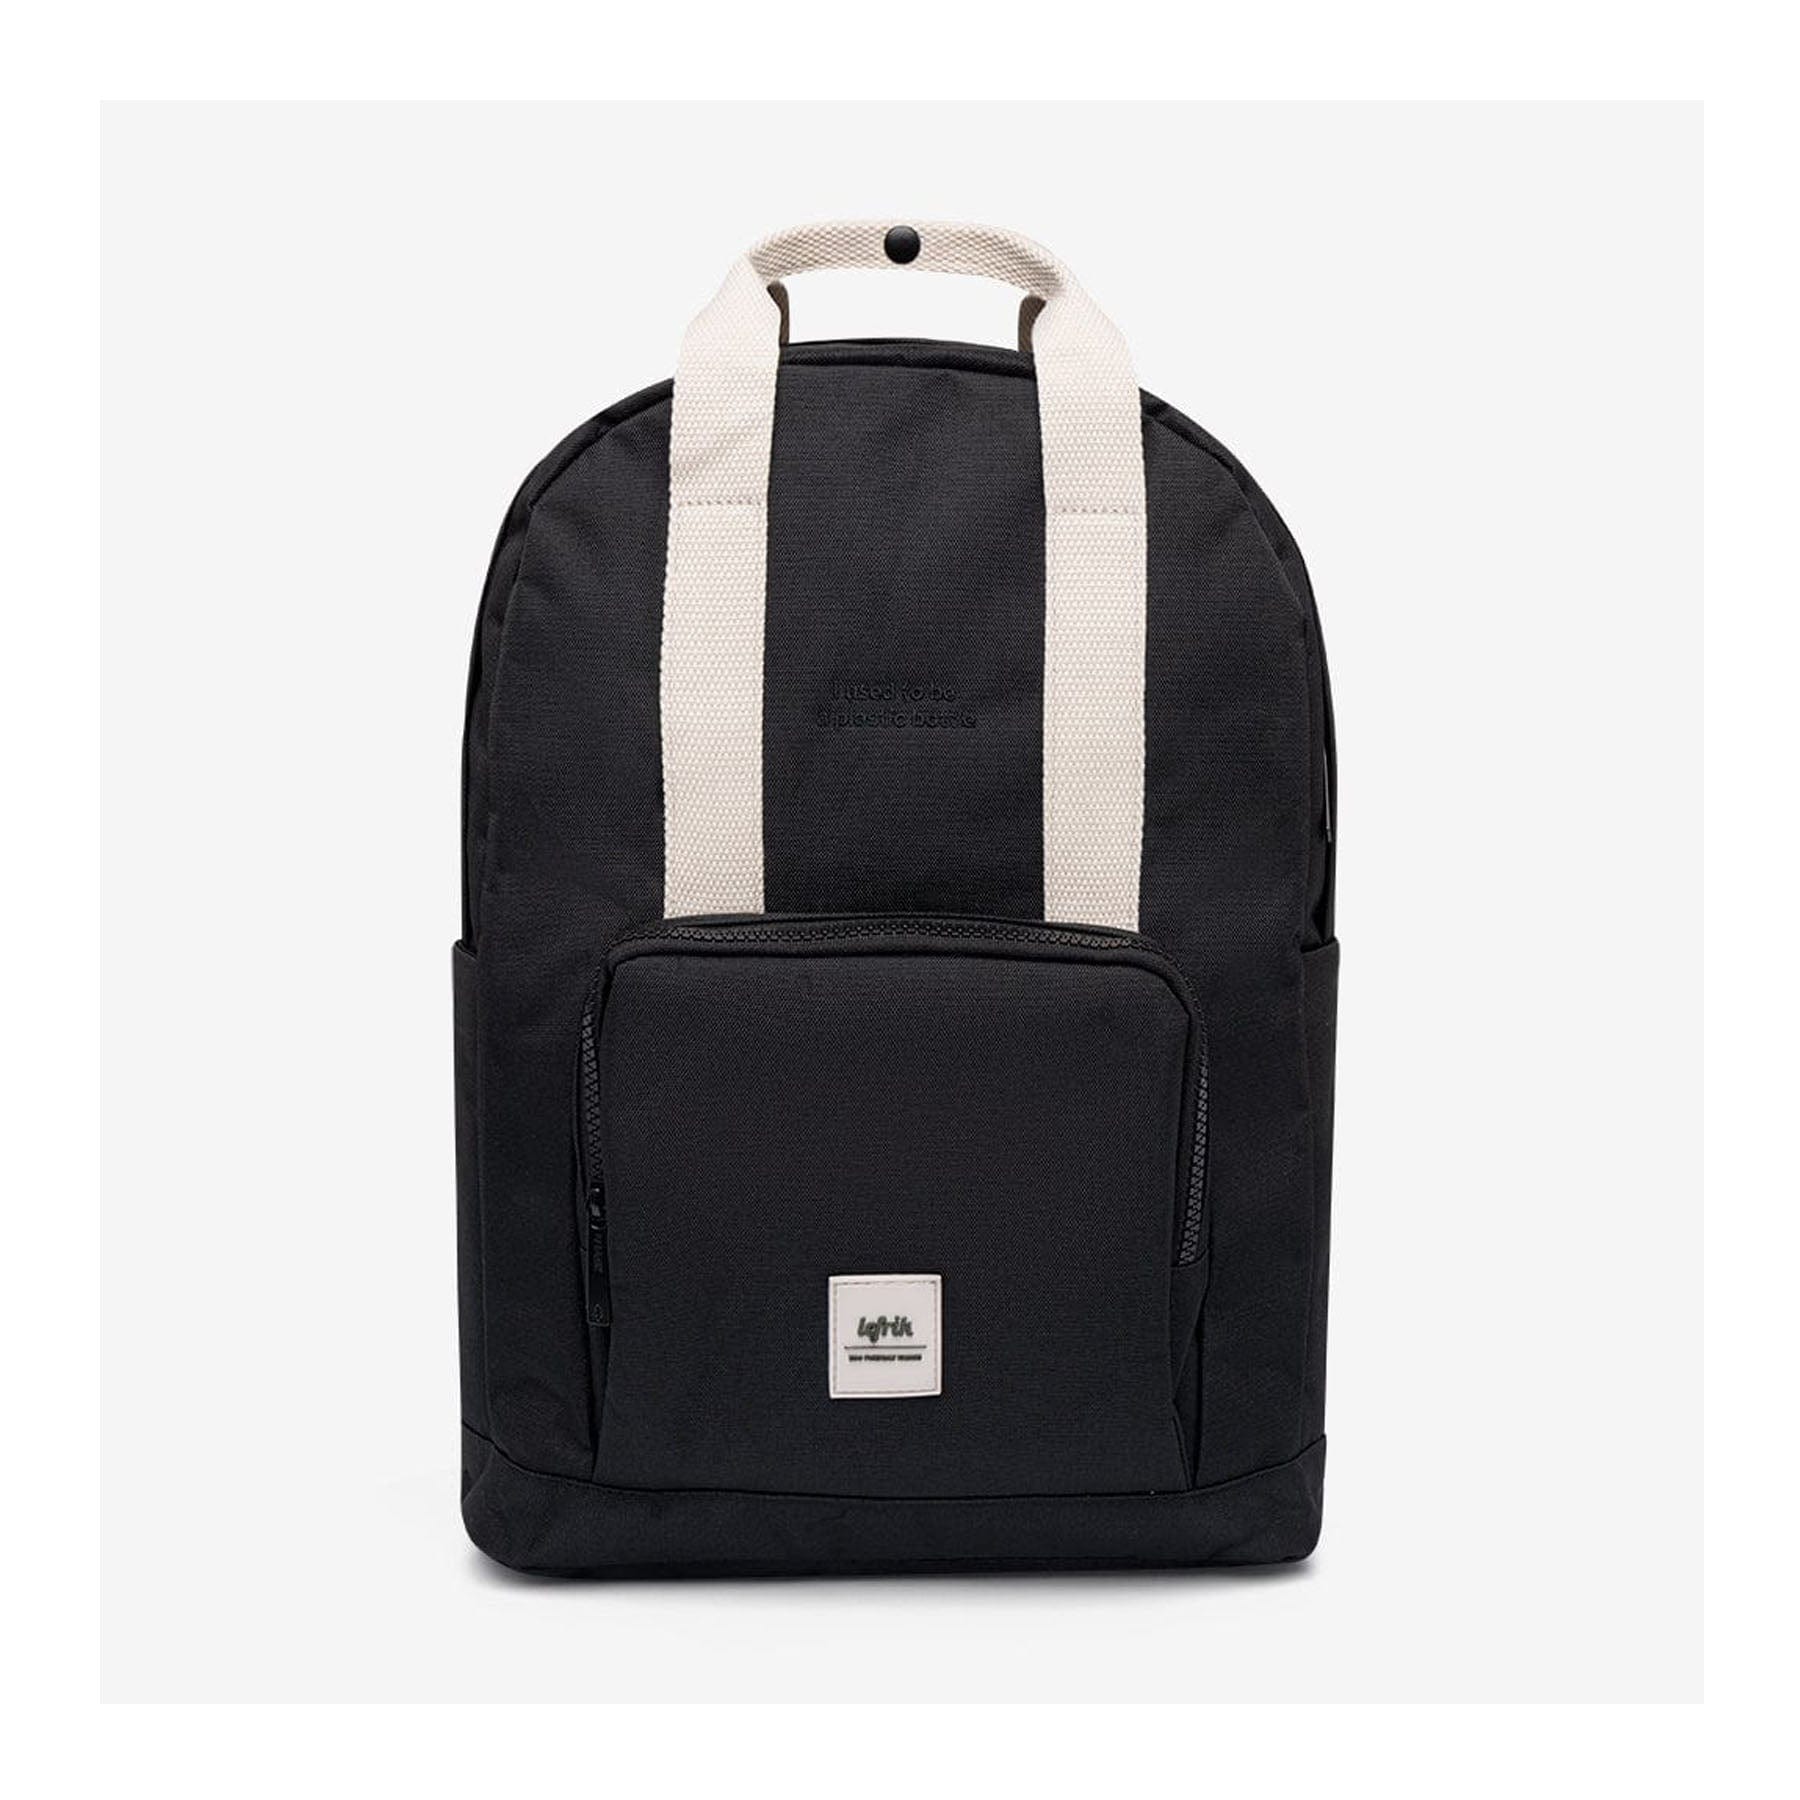 Capsule backpack black